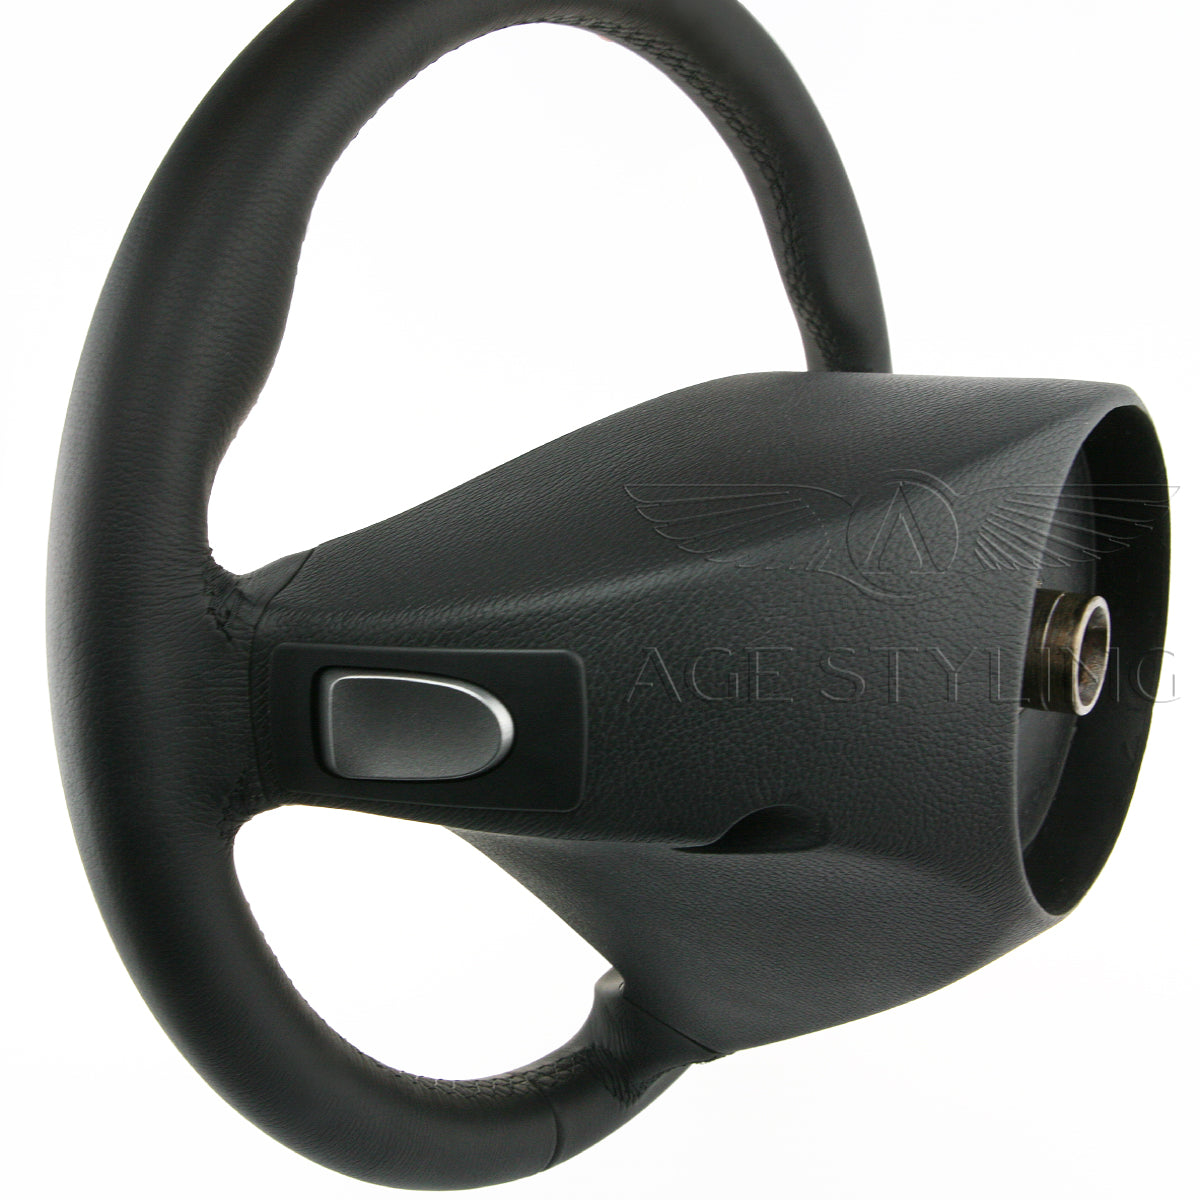 02-07 Mercedes-Benz C230 C280 C350 Steering Wheel w Gear Shifters # 17 –  AGE Styling